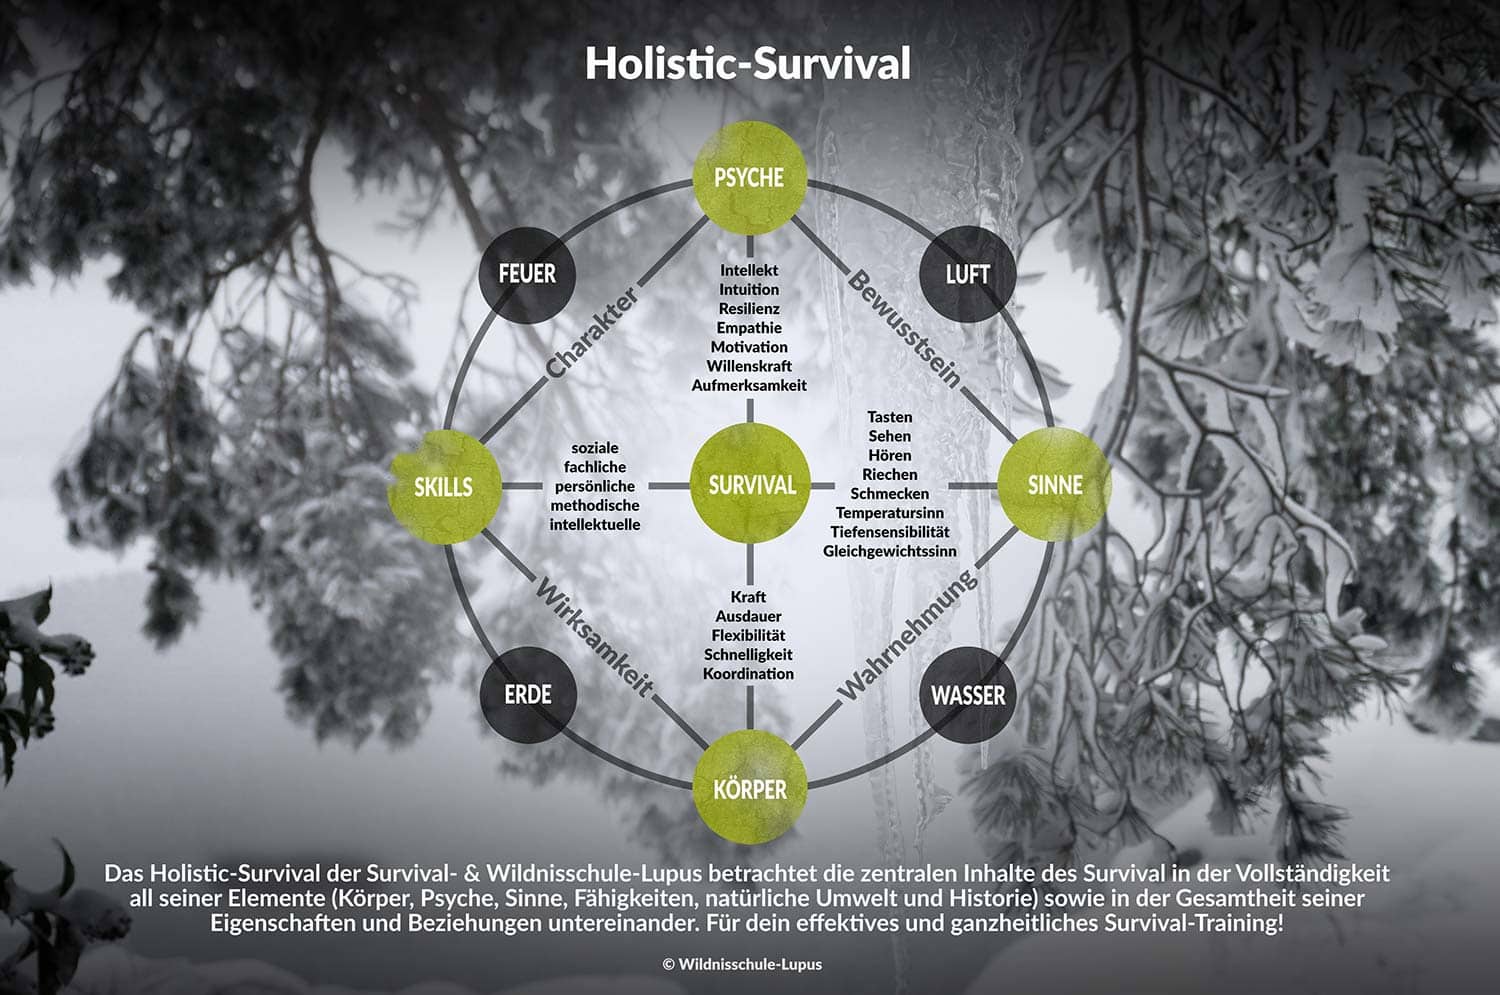 Die Grafik zeigt das Holistic-Survival Konzept der Wildnisschule Lupus. Die Wildnisschule die erste Bildungseinrichtung mit diesem innovativen ganzheitlichen Schulungssystem.